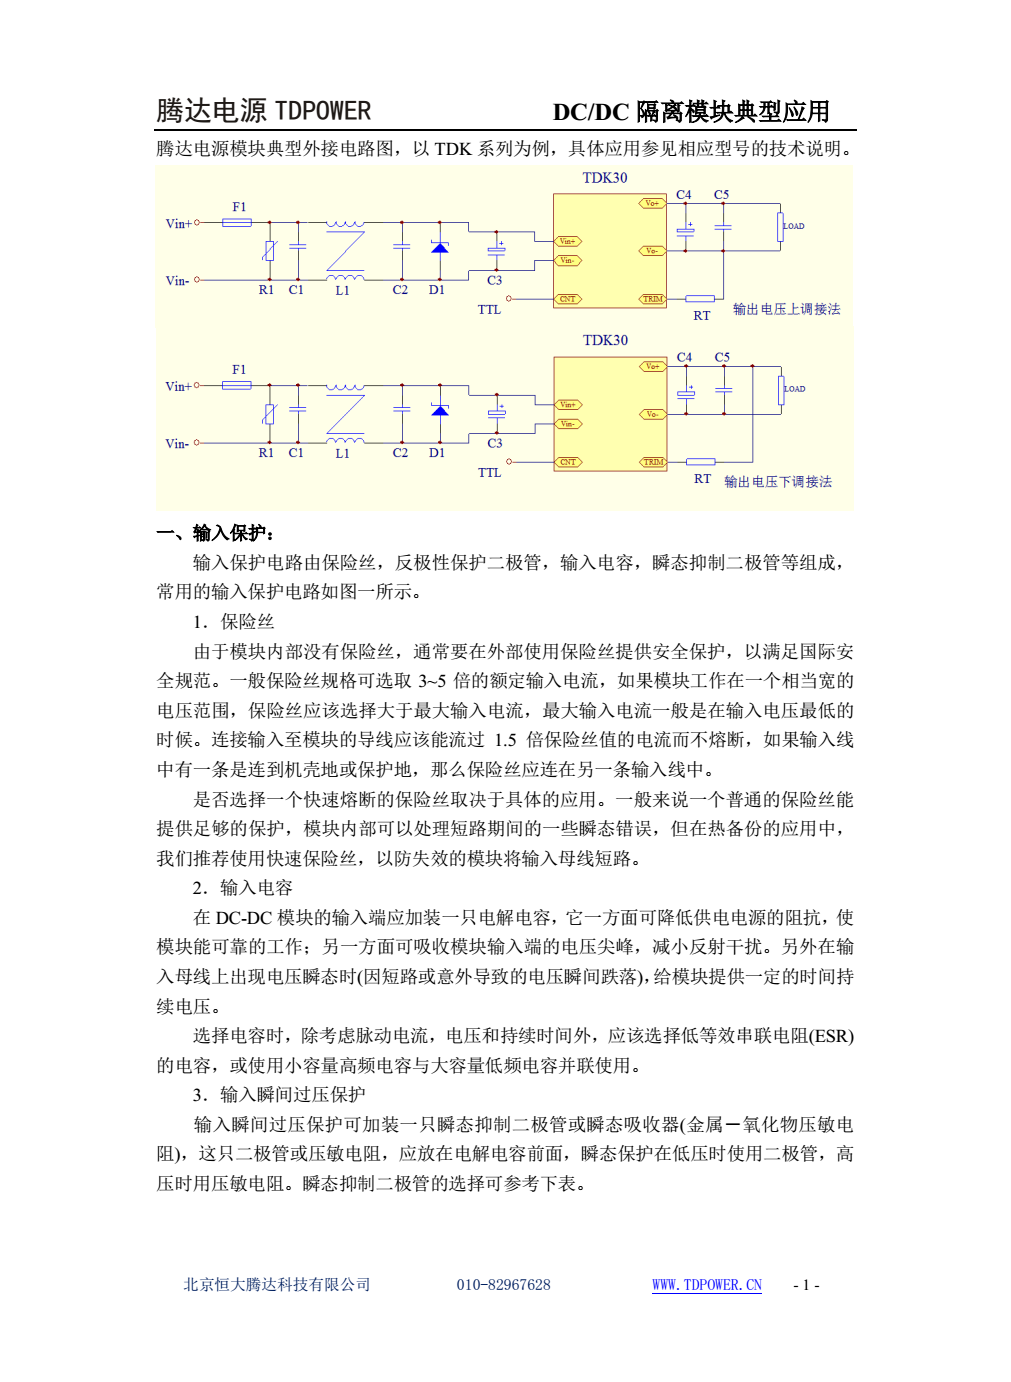 腾达电源DCDC隔离电源模块典型应用文档(图1)